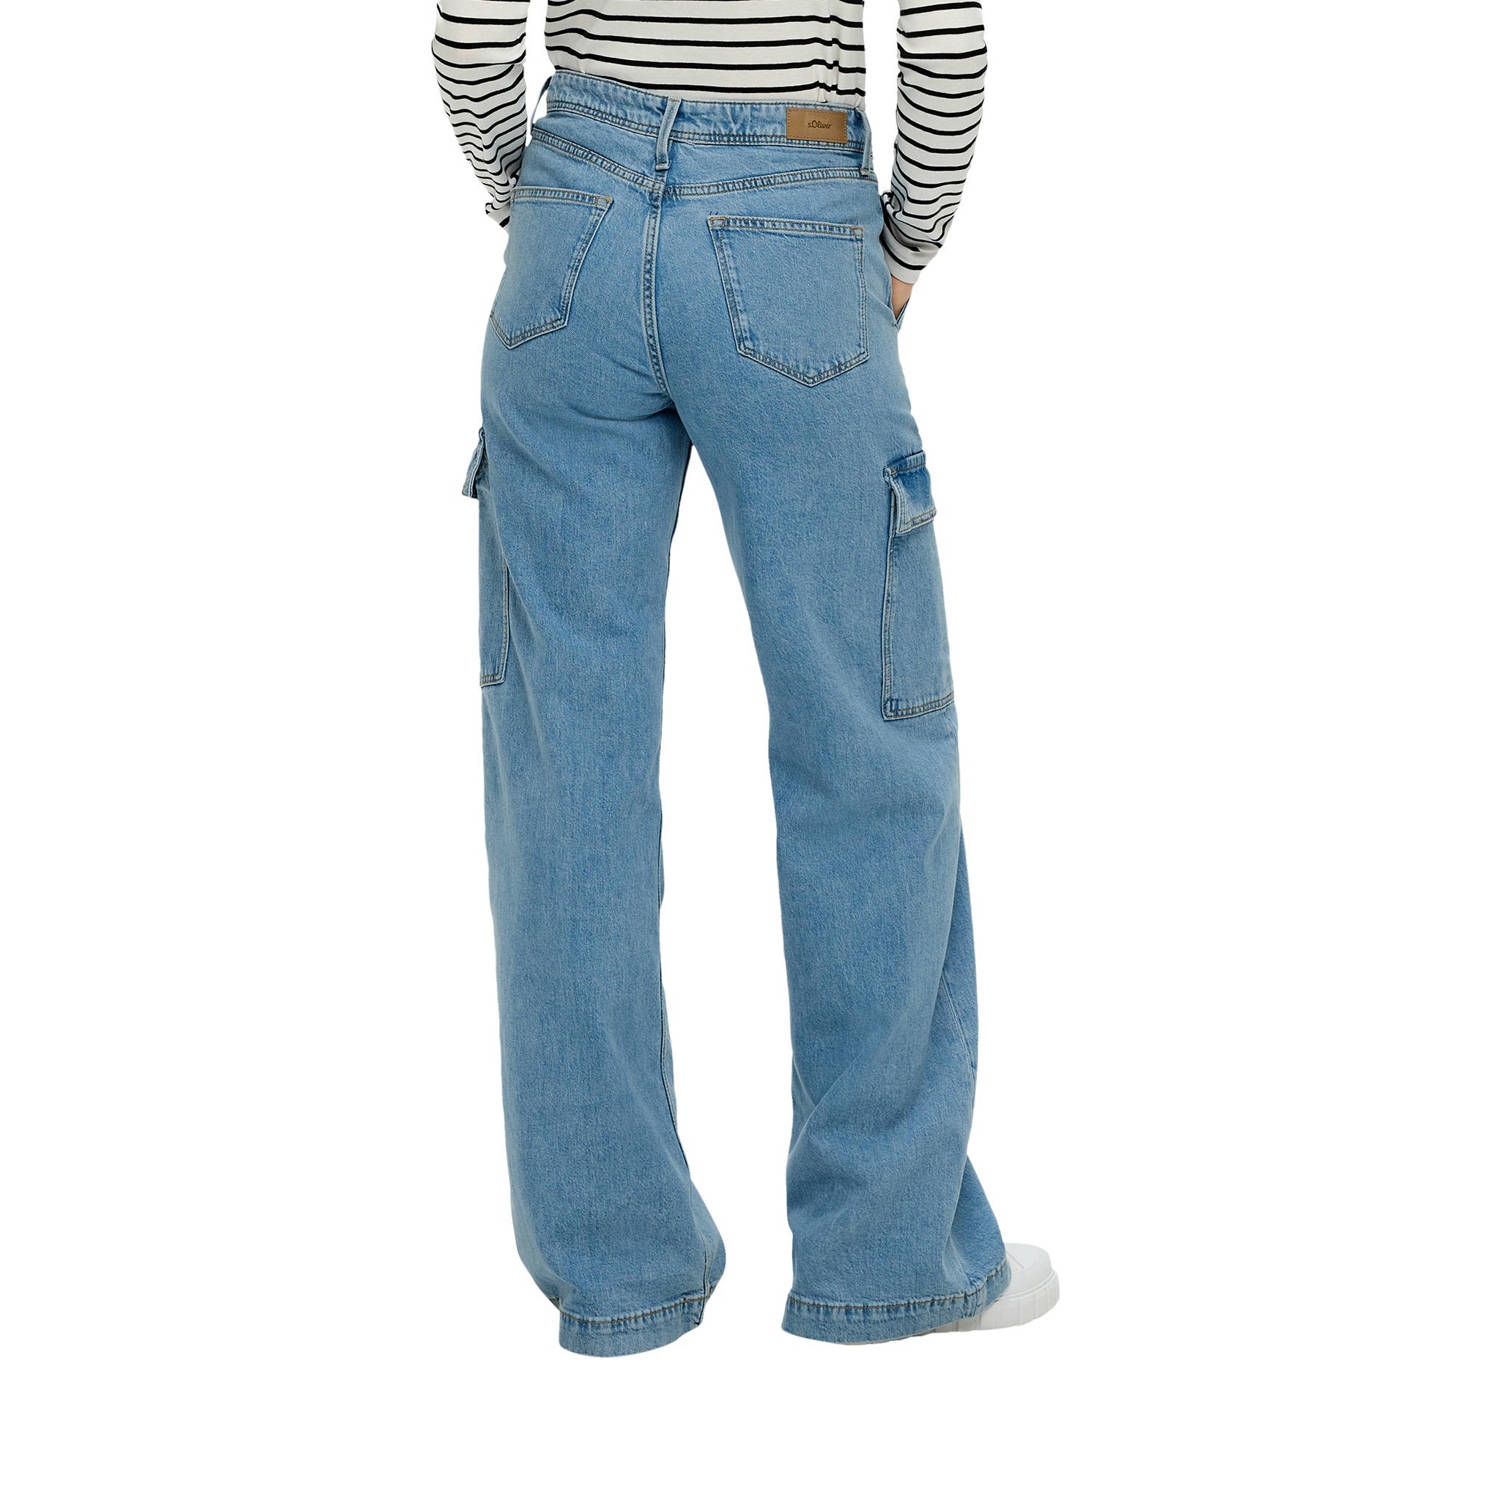 s.Oliver regular jeans light blue denim